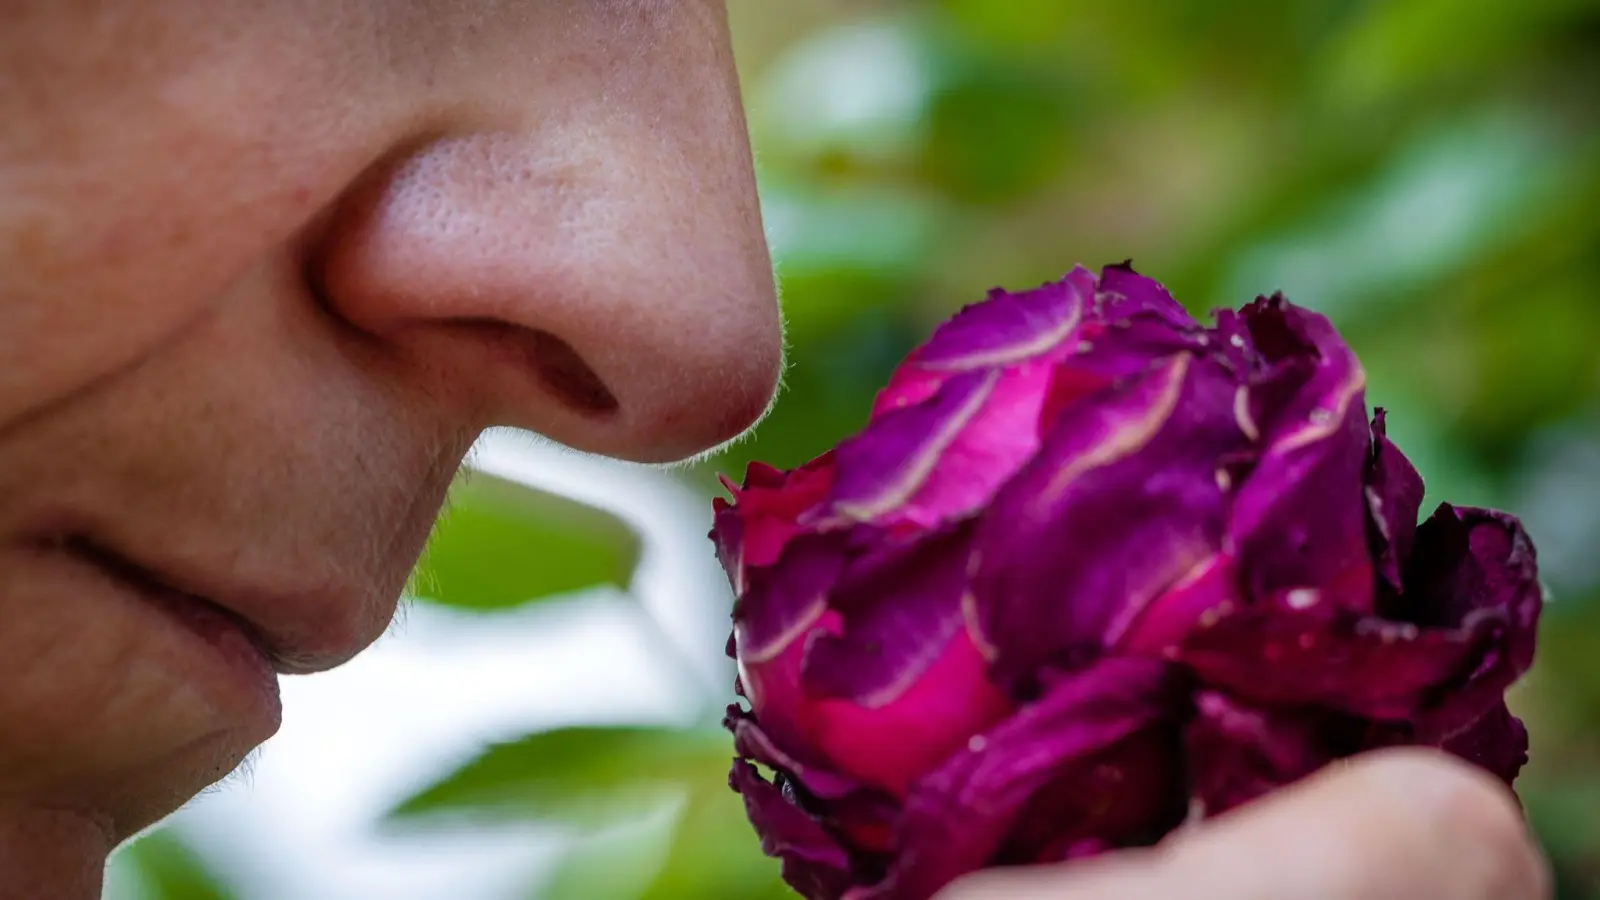 Riechen an einer Rosenblüte: Der Geruchssinn des Menschen ist auch für die mentale Gesundheit, harmonische Beziehungen und zum Lösung von Alltagsproblemen wichtig. (Foto: Jens Büttner/dpa)